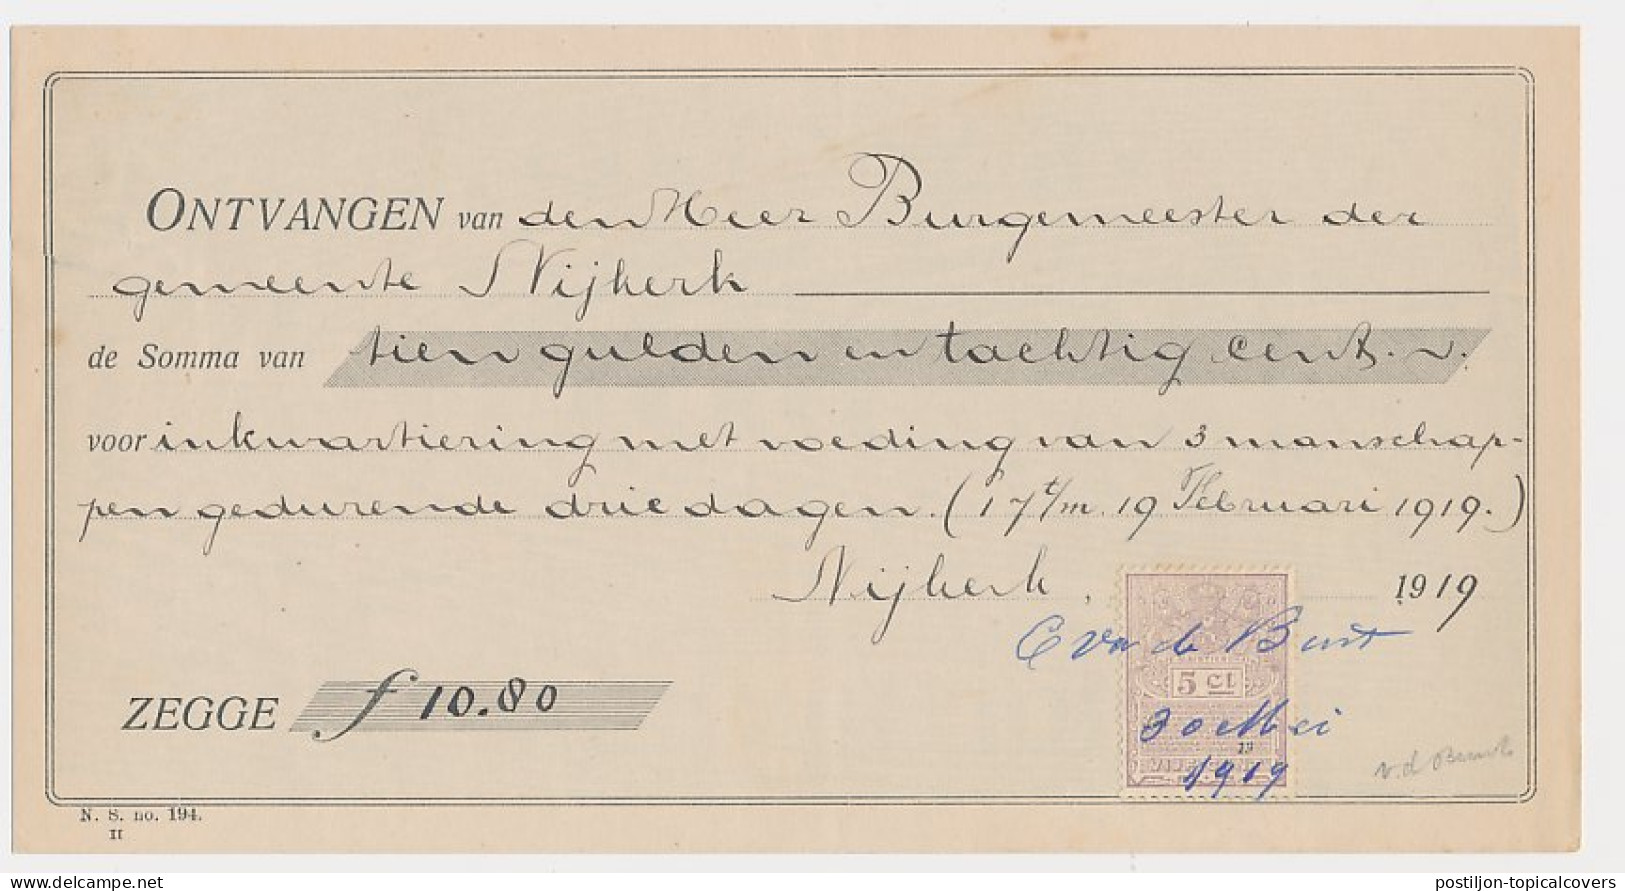  Plakzegel 5 Ct Den 19.. - Nijkerk 1919 - Fiscales